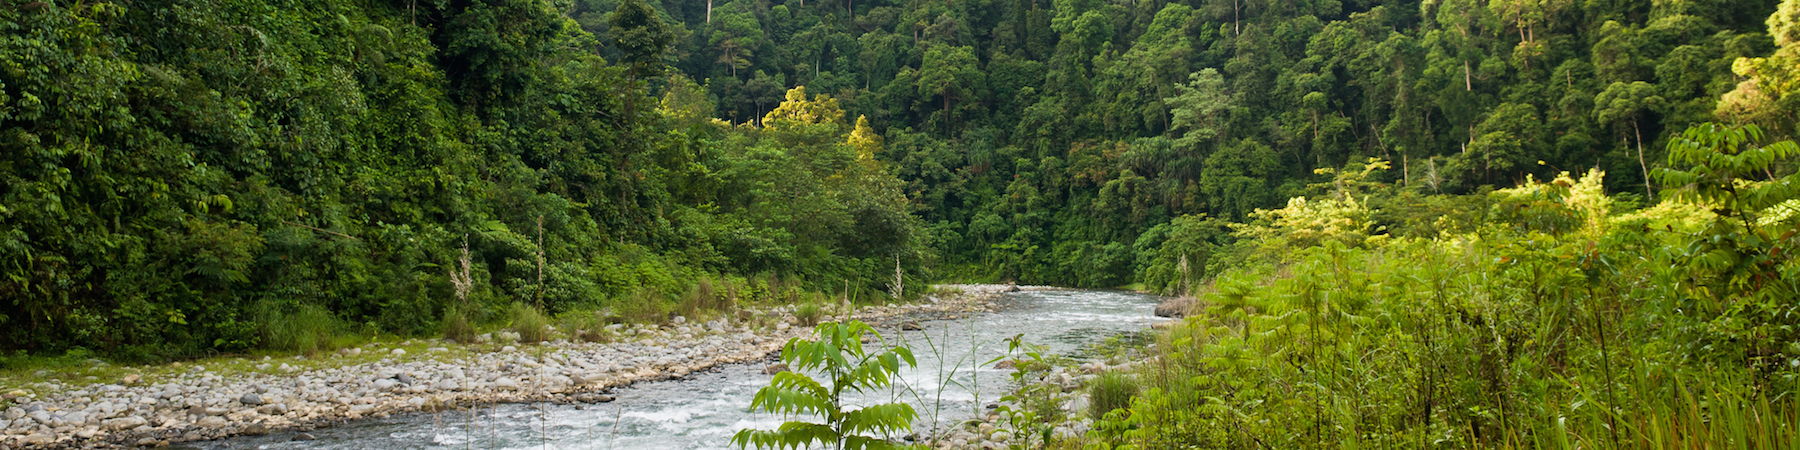 Bukit Lawang Uniknya Wisata Alam Taman Nasional Gunung Leuser Sumatera